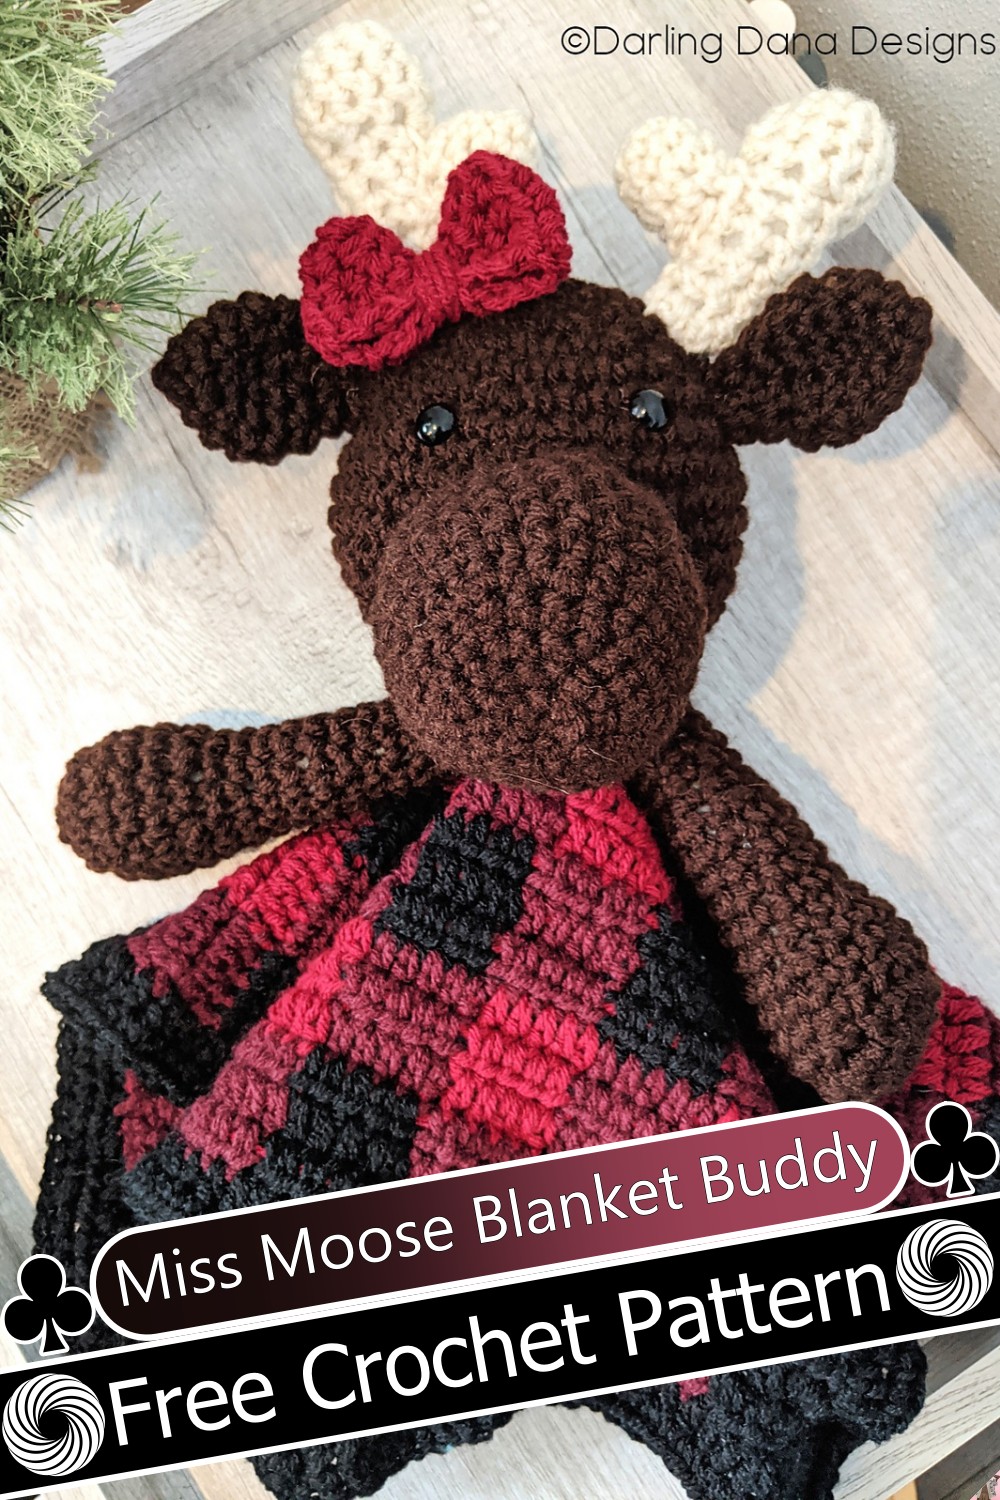 Miss Moose Blanket Buddy